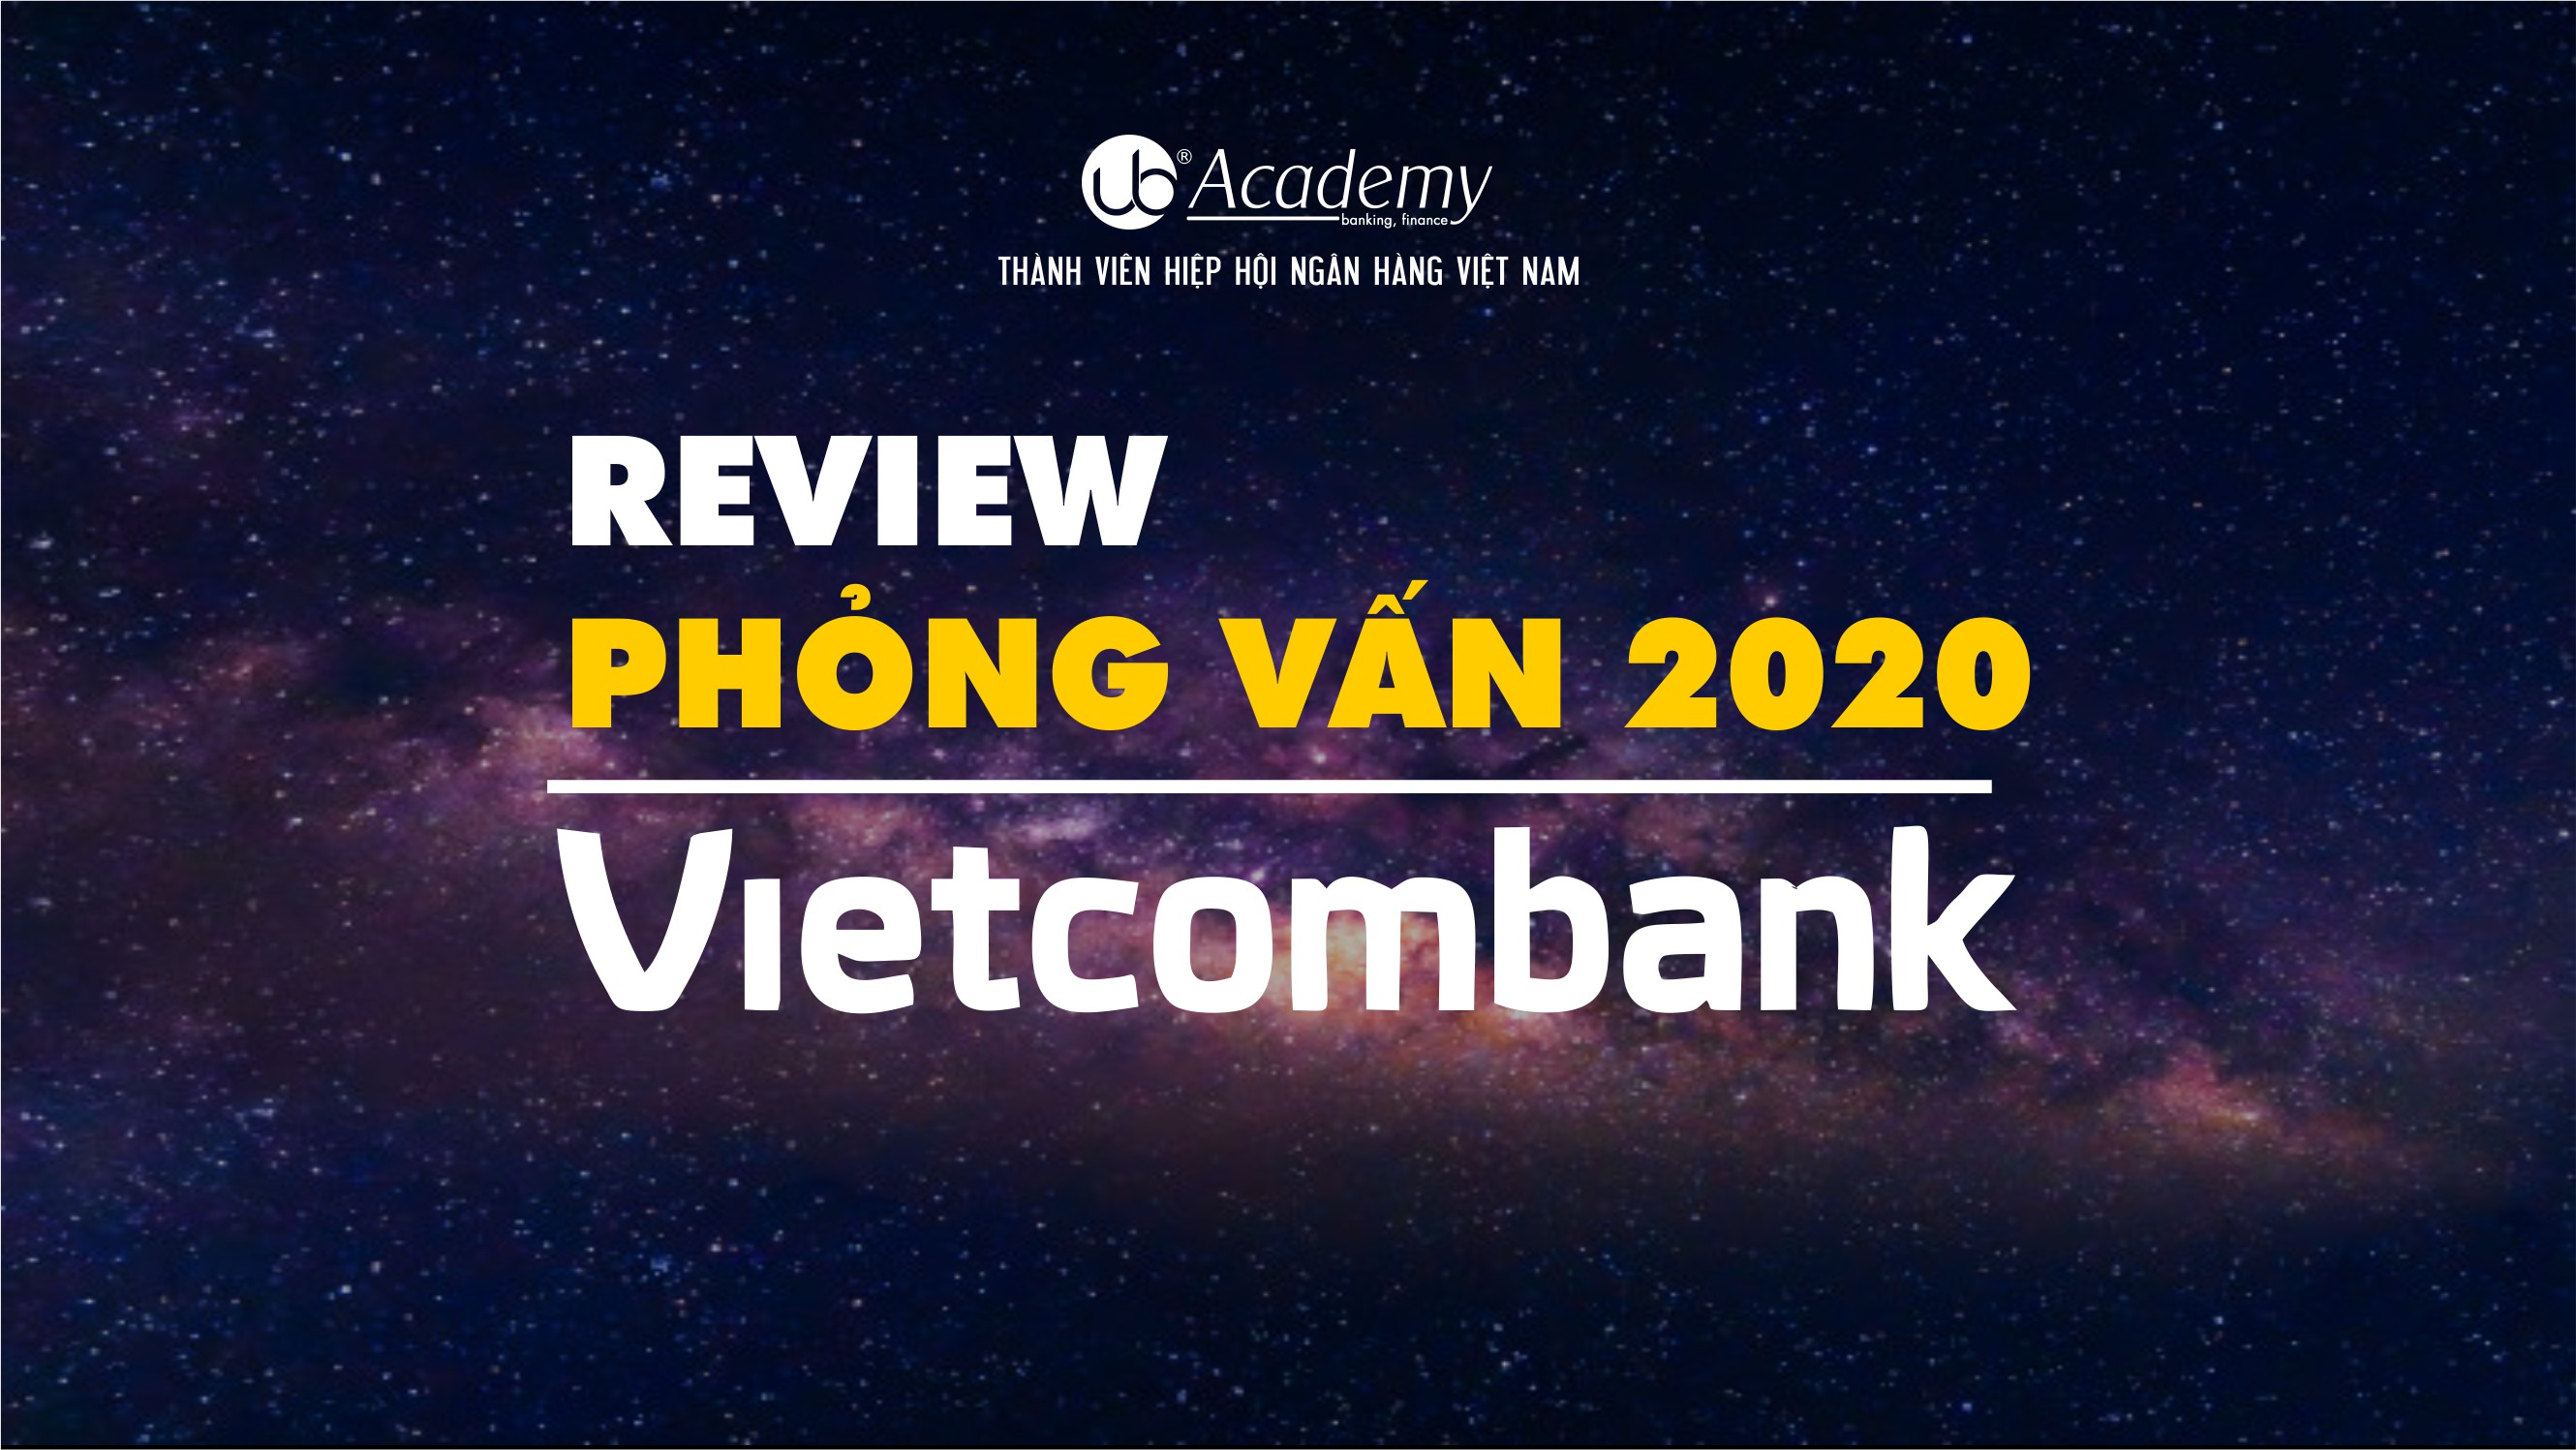 Phỏng vấn Vietcombank 2020.jpg